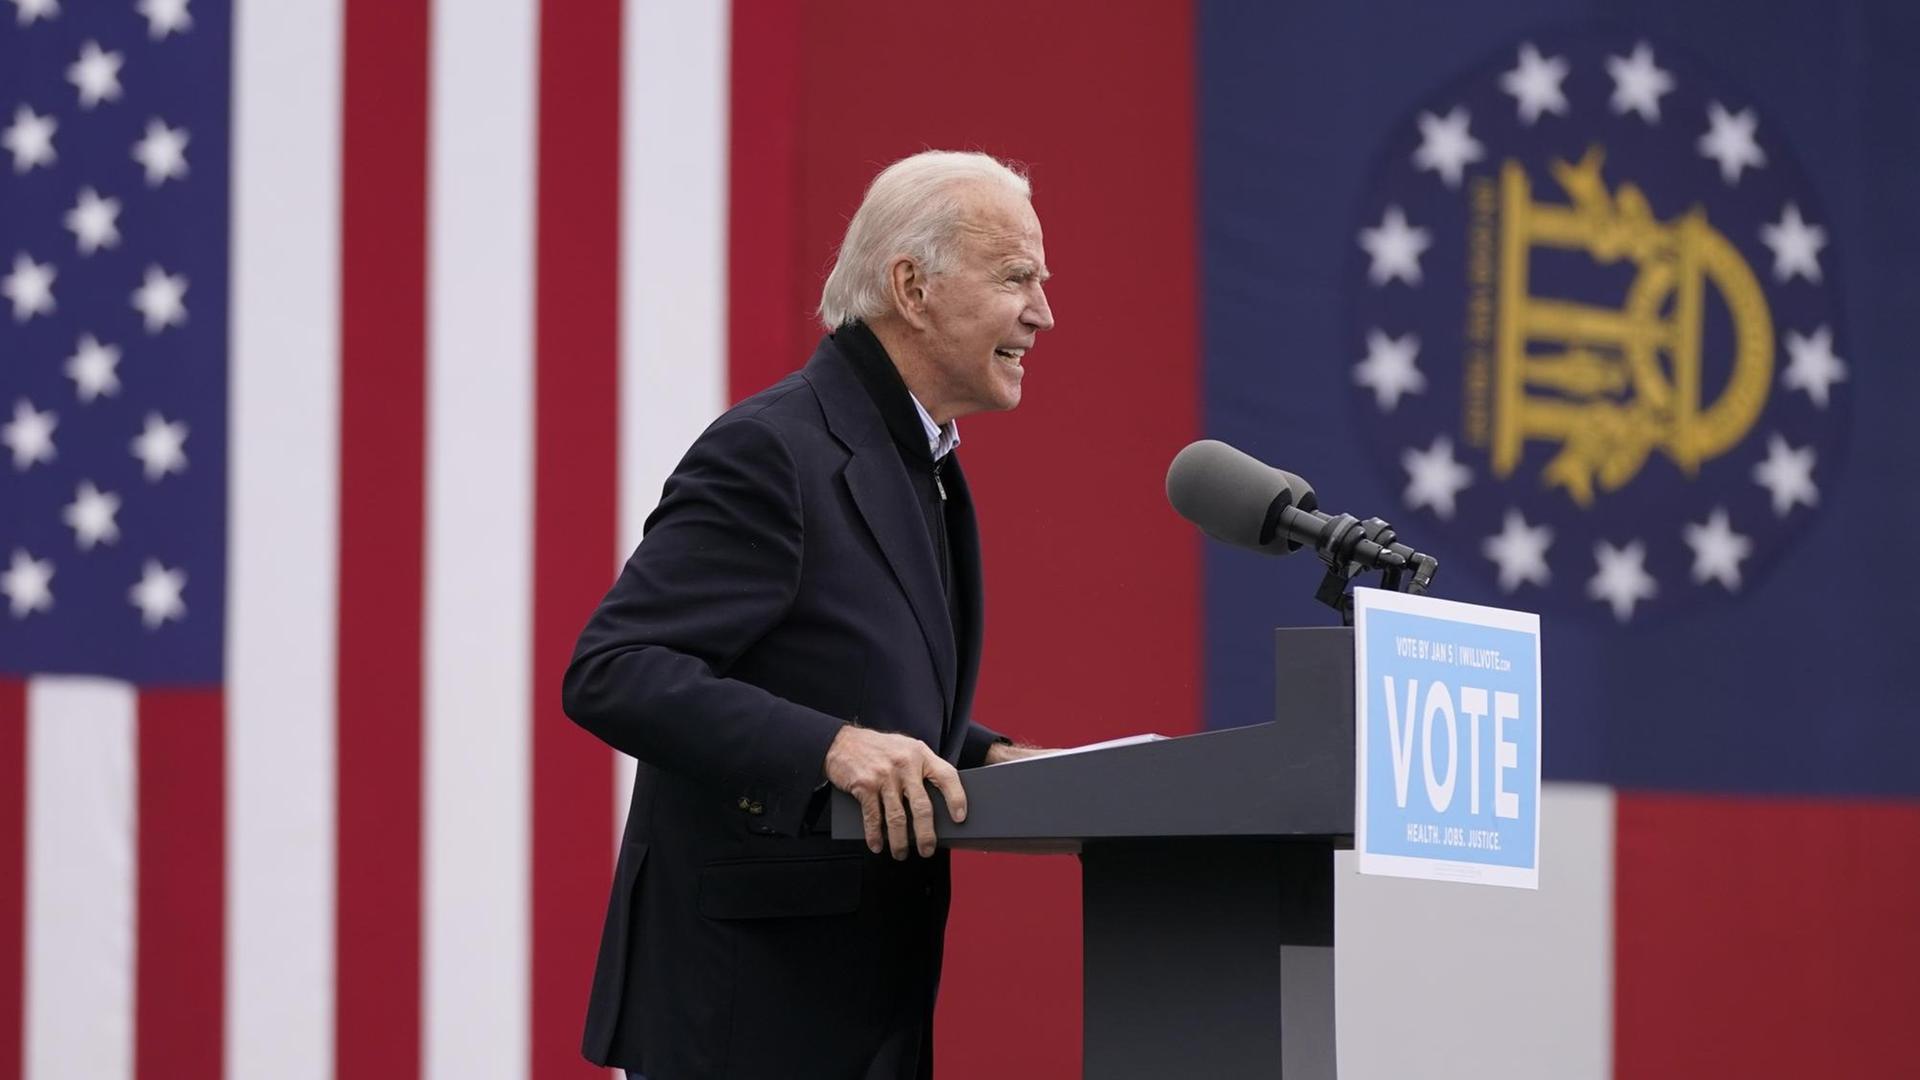 Der künftige Präsident von dem Land USA, Joe Biden, spricht auf einer Veranstaltung. 